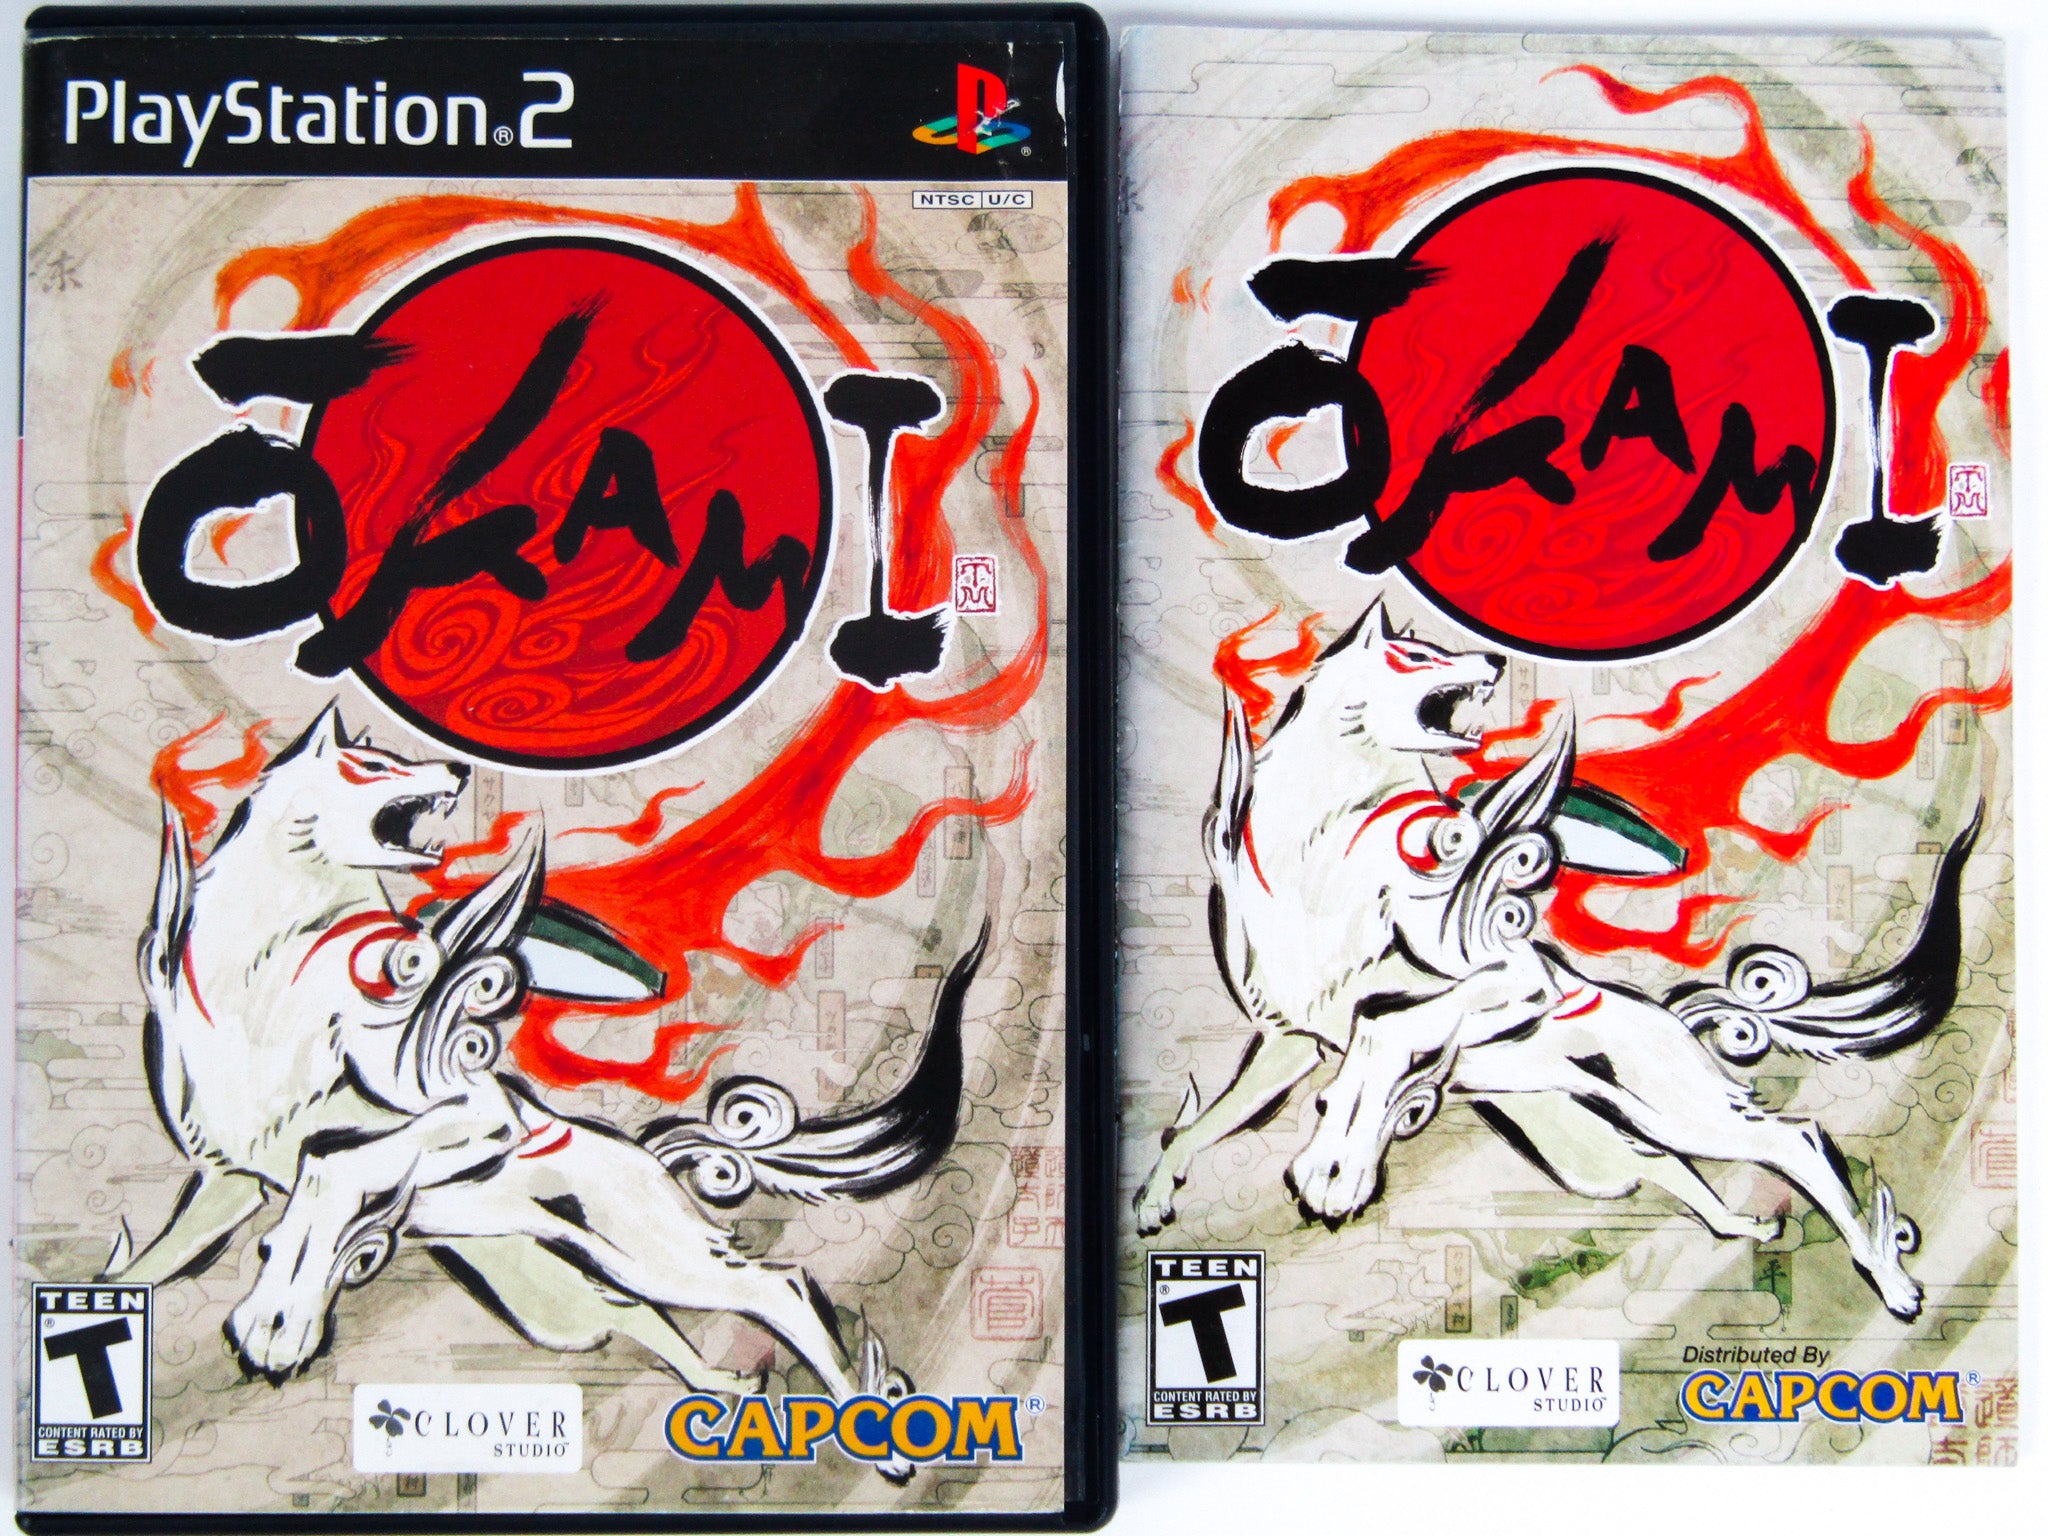 Okami (Playstation 2 / PS2) – RetroMTL